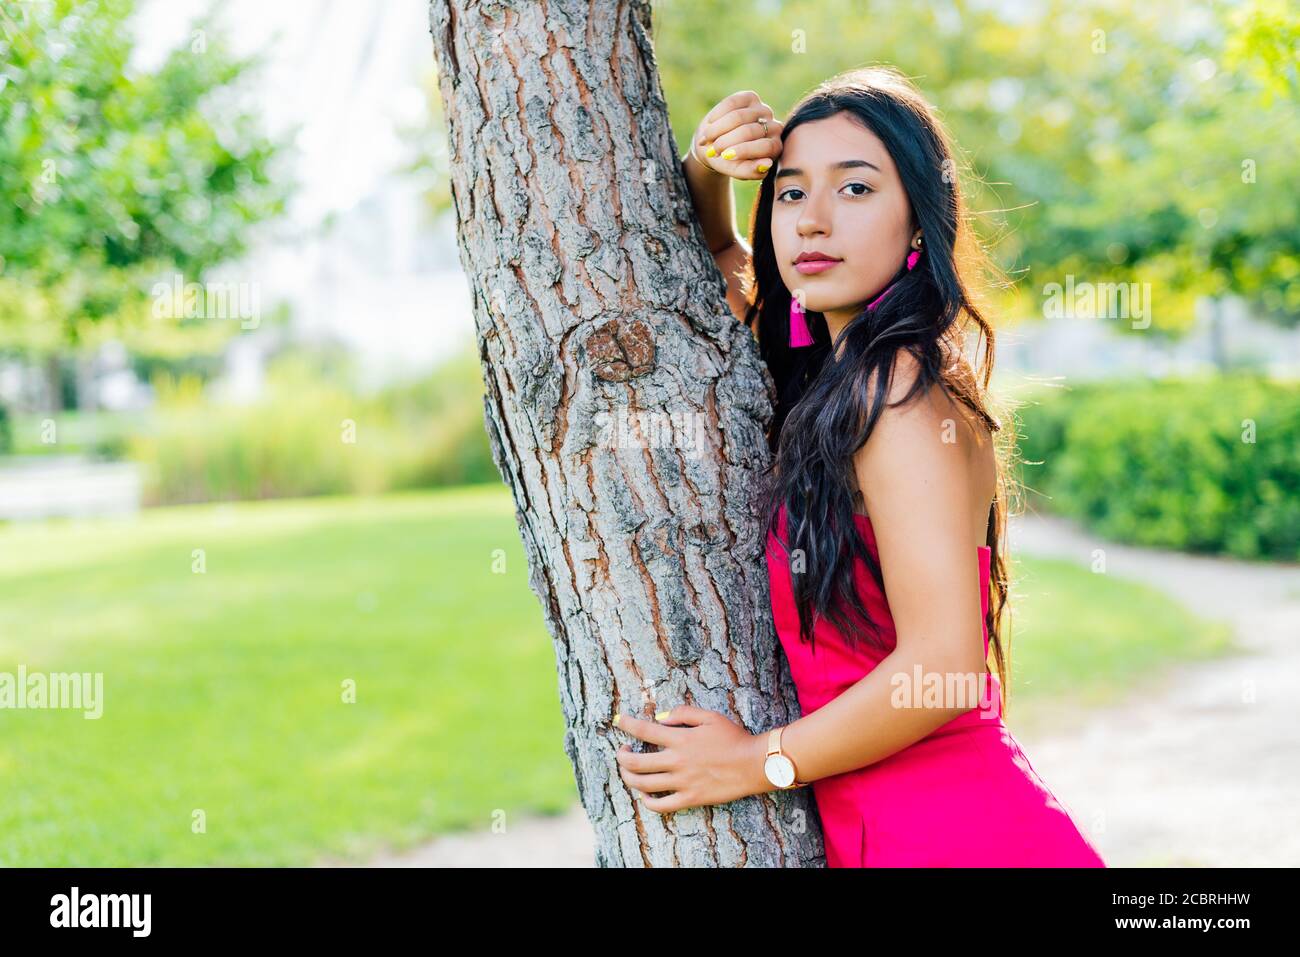 Jeune fille Latina brune avec de longs cheveux noirs et des yeux noirs, portant une robe rouge, regardant la caméra penchée sur un tronc d'arbre. Espace de copie Banque D'Images